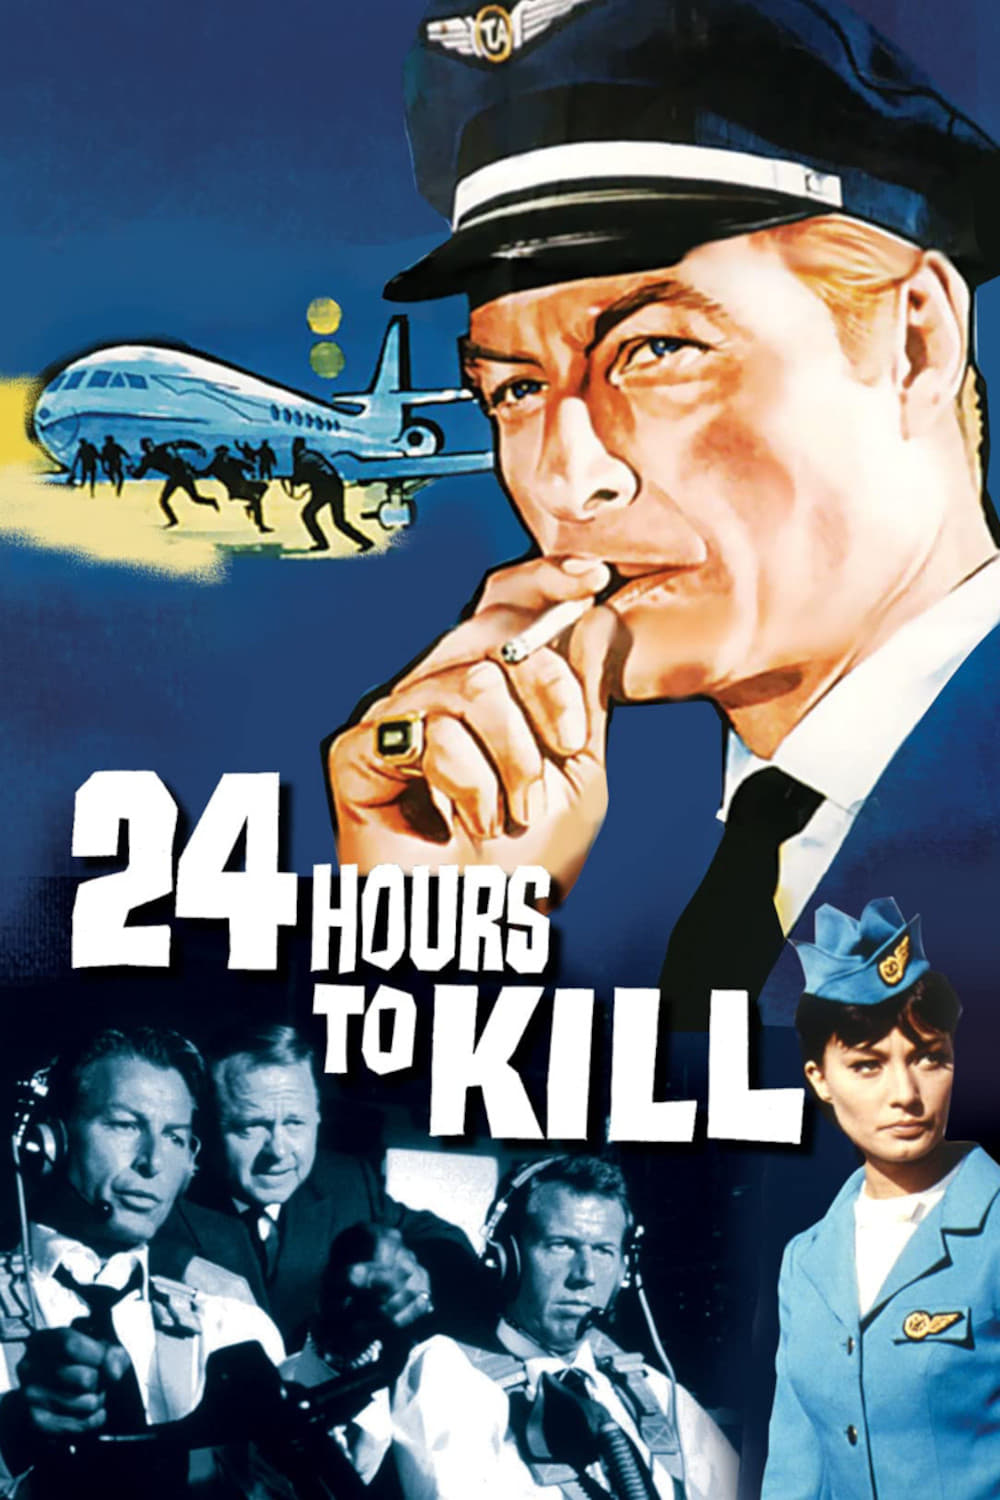 Twenty-Four Hours to Kill